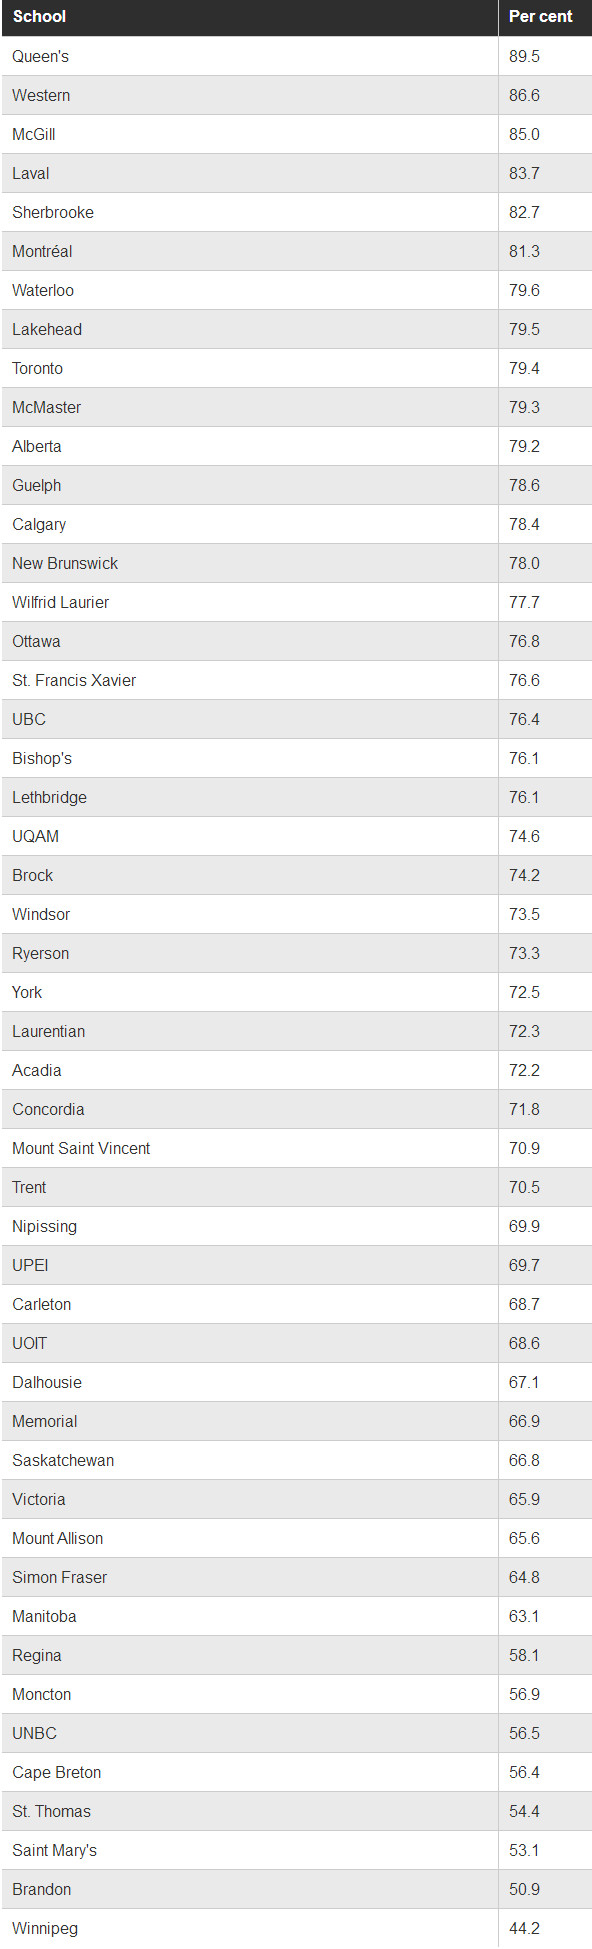 加拿大留学毕业率低的大学Top10